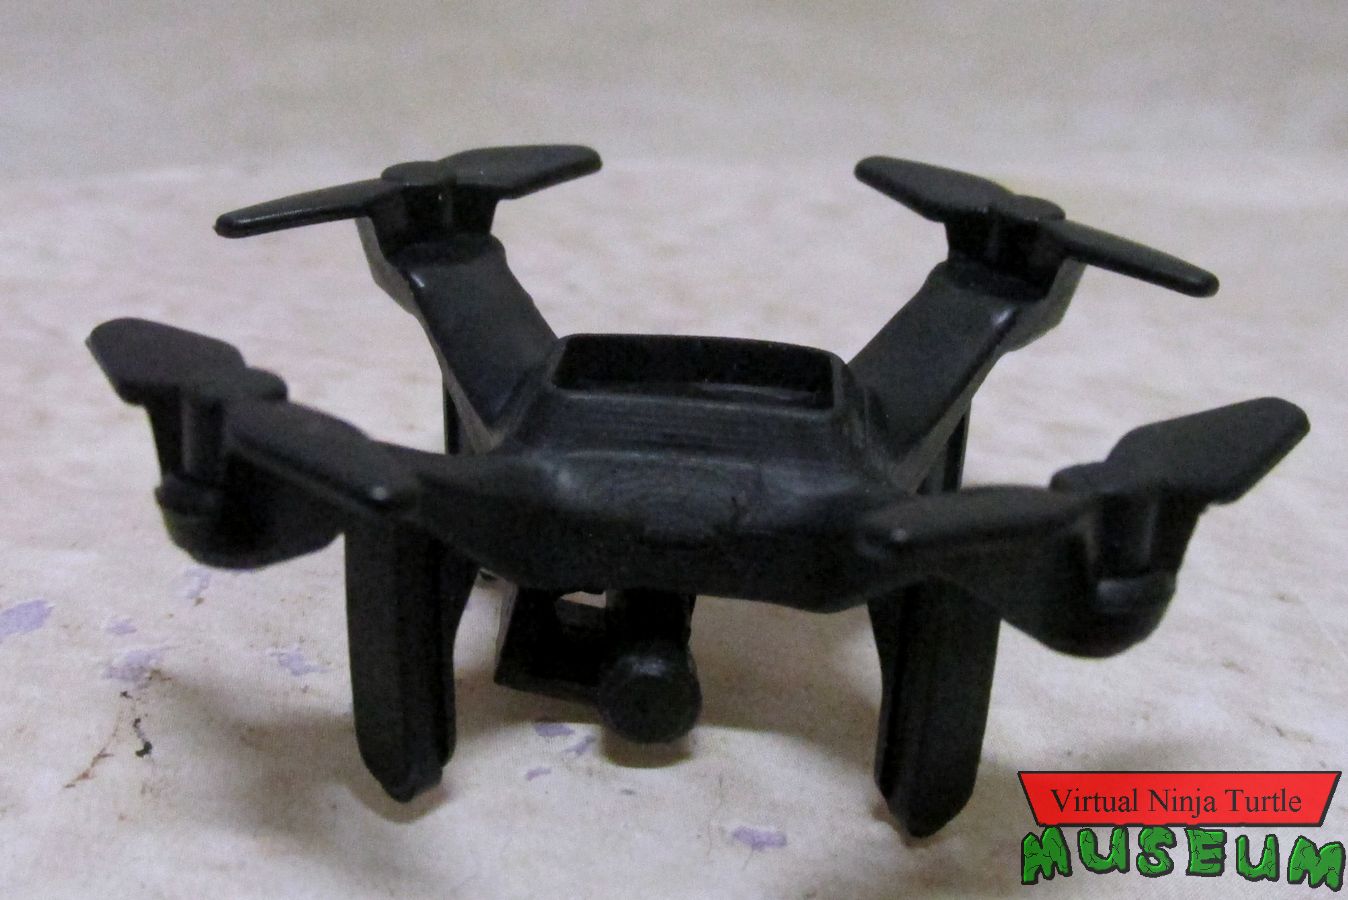 Donatello's drone front view